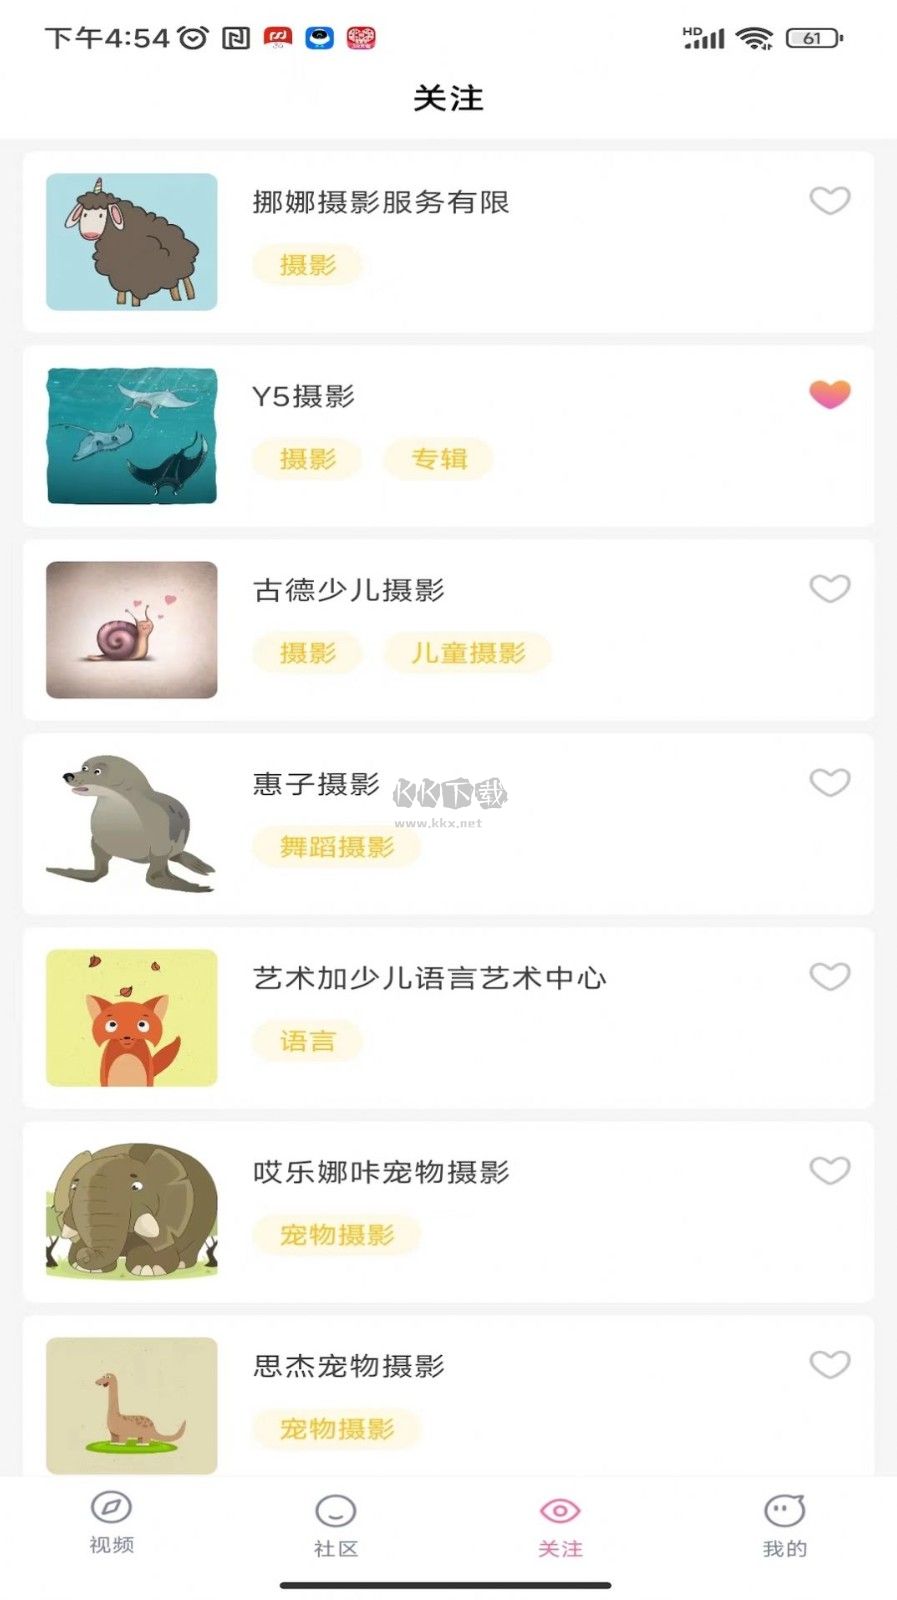 百阅视频app官方版